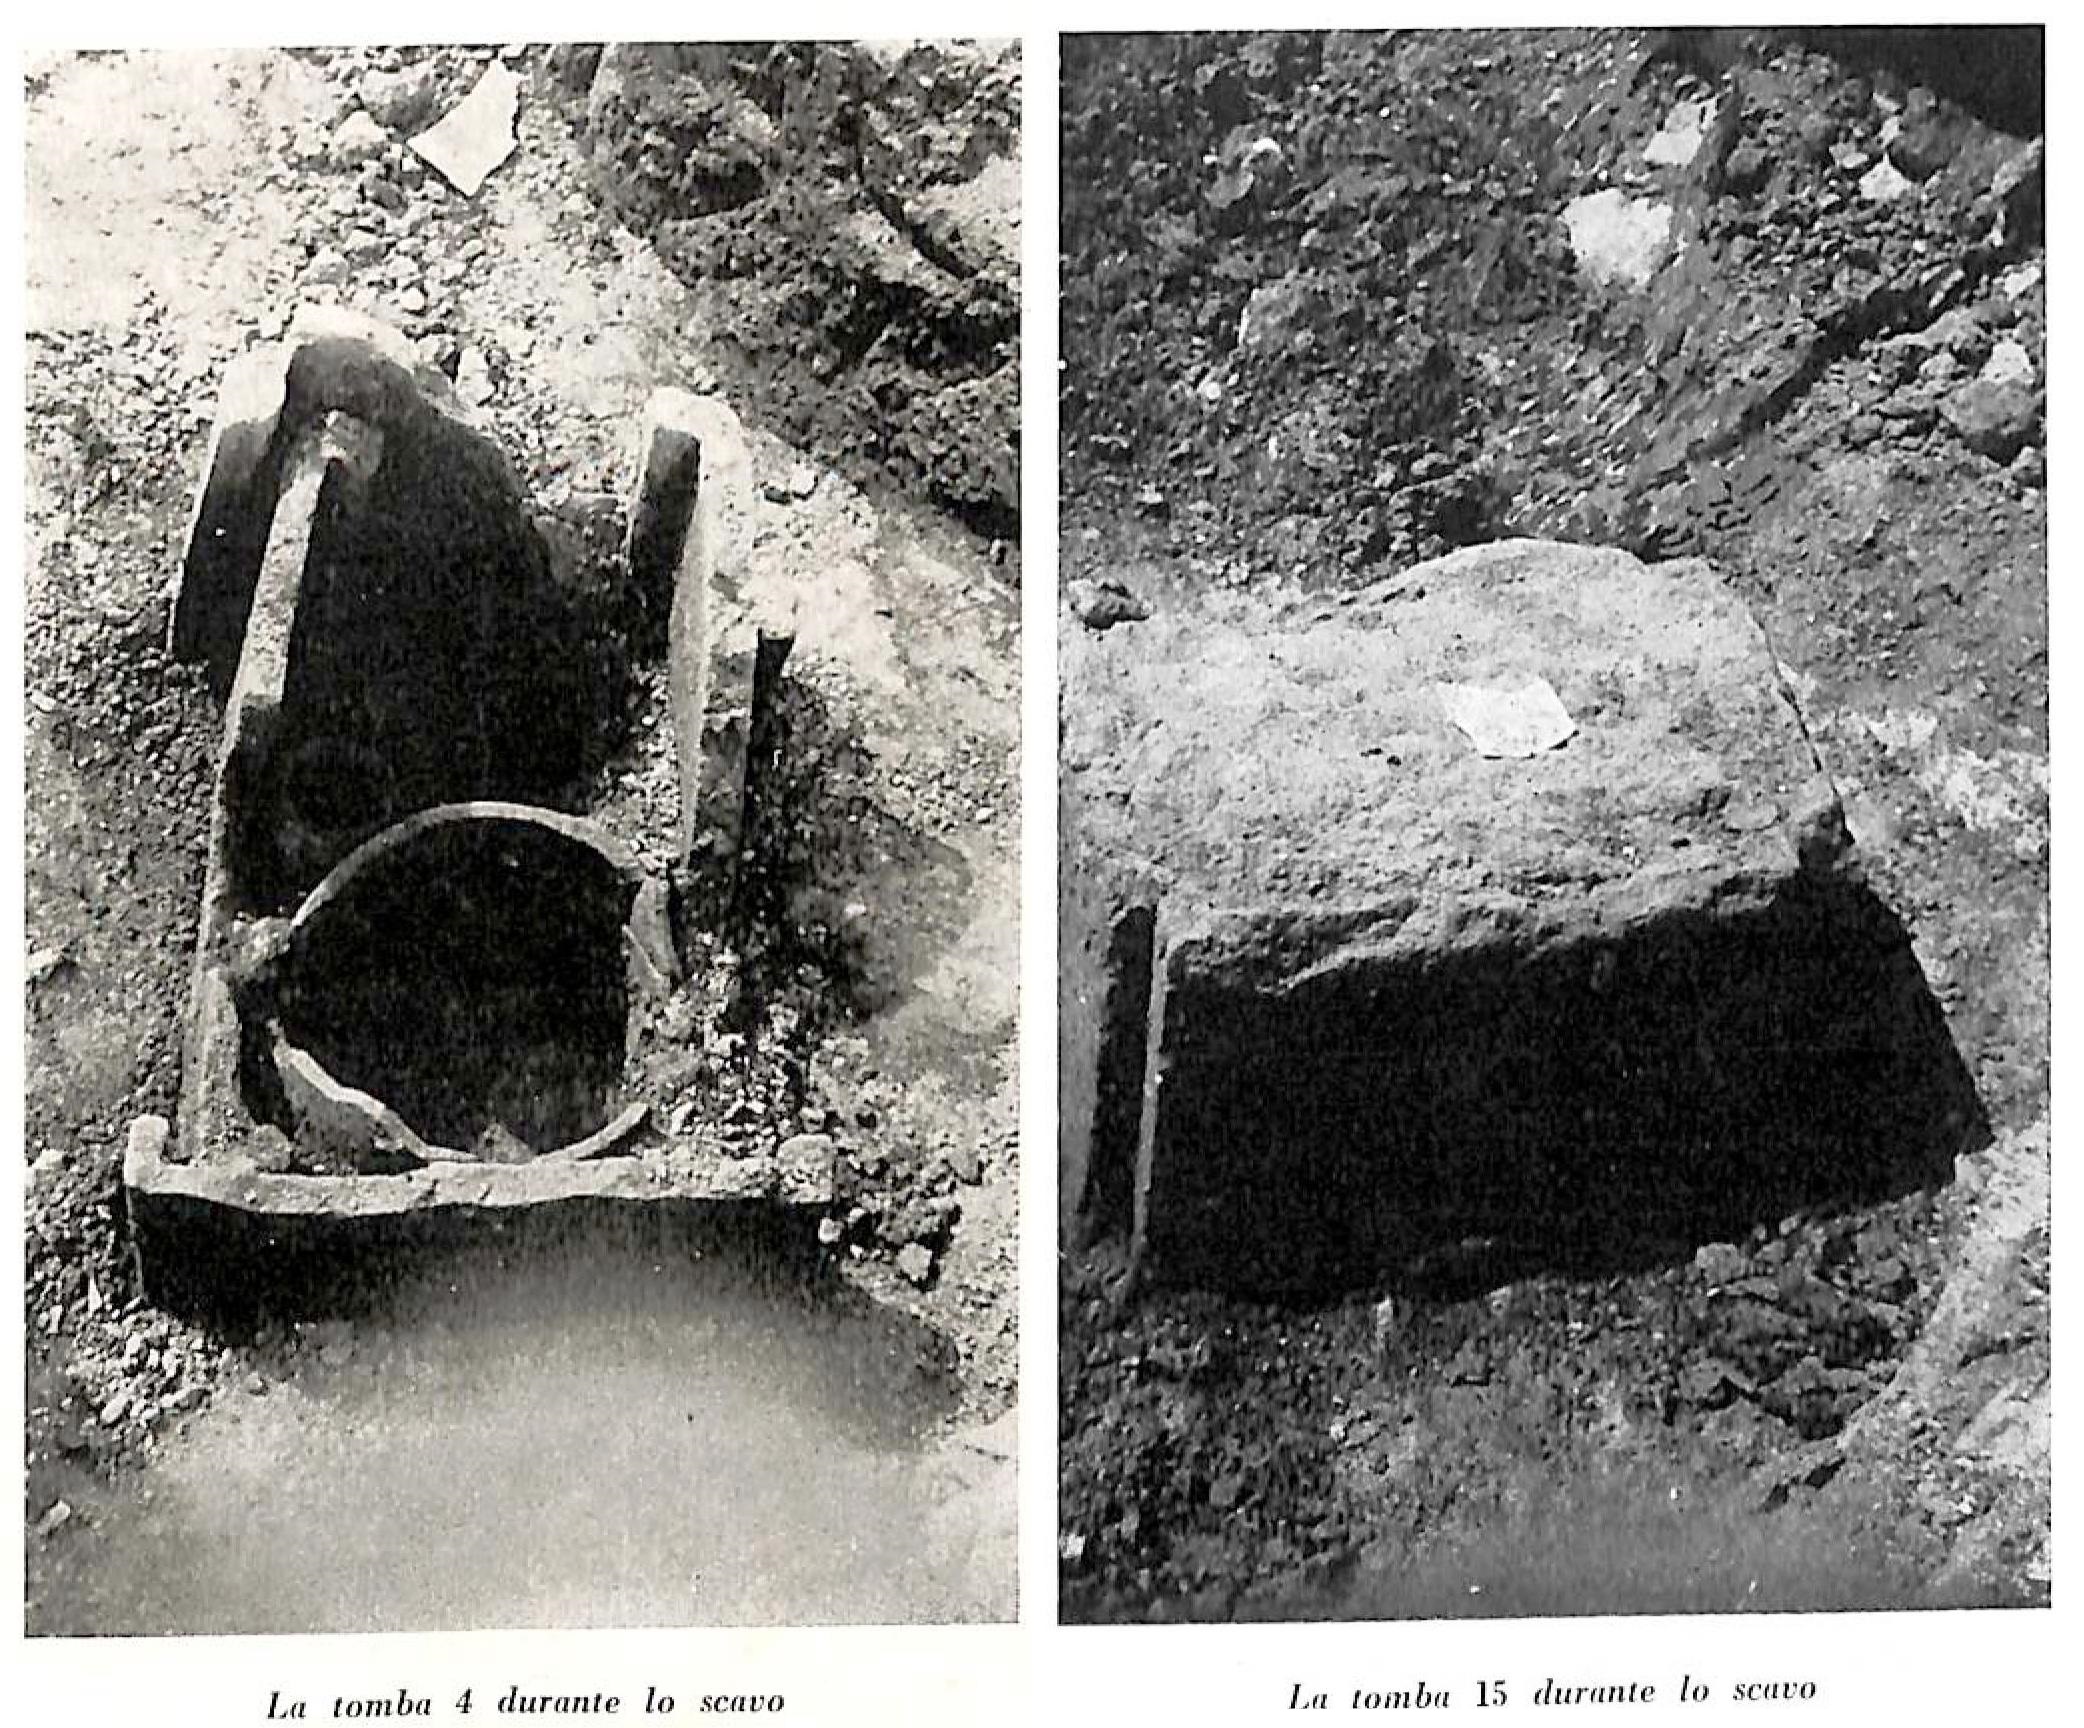 Necropoli di Limone Melara (area ad uso funerario, necropoli) - La Spezia (SP)  (PERIODIZZAZIONI/ Storia/ Eta' antica/ Eta' romana/ Eta' romana imperiale)